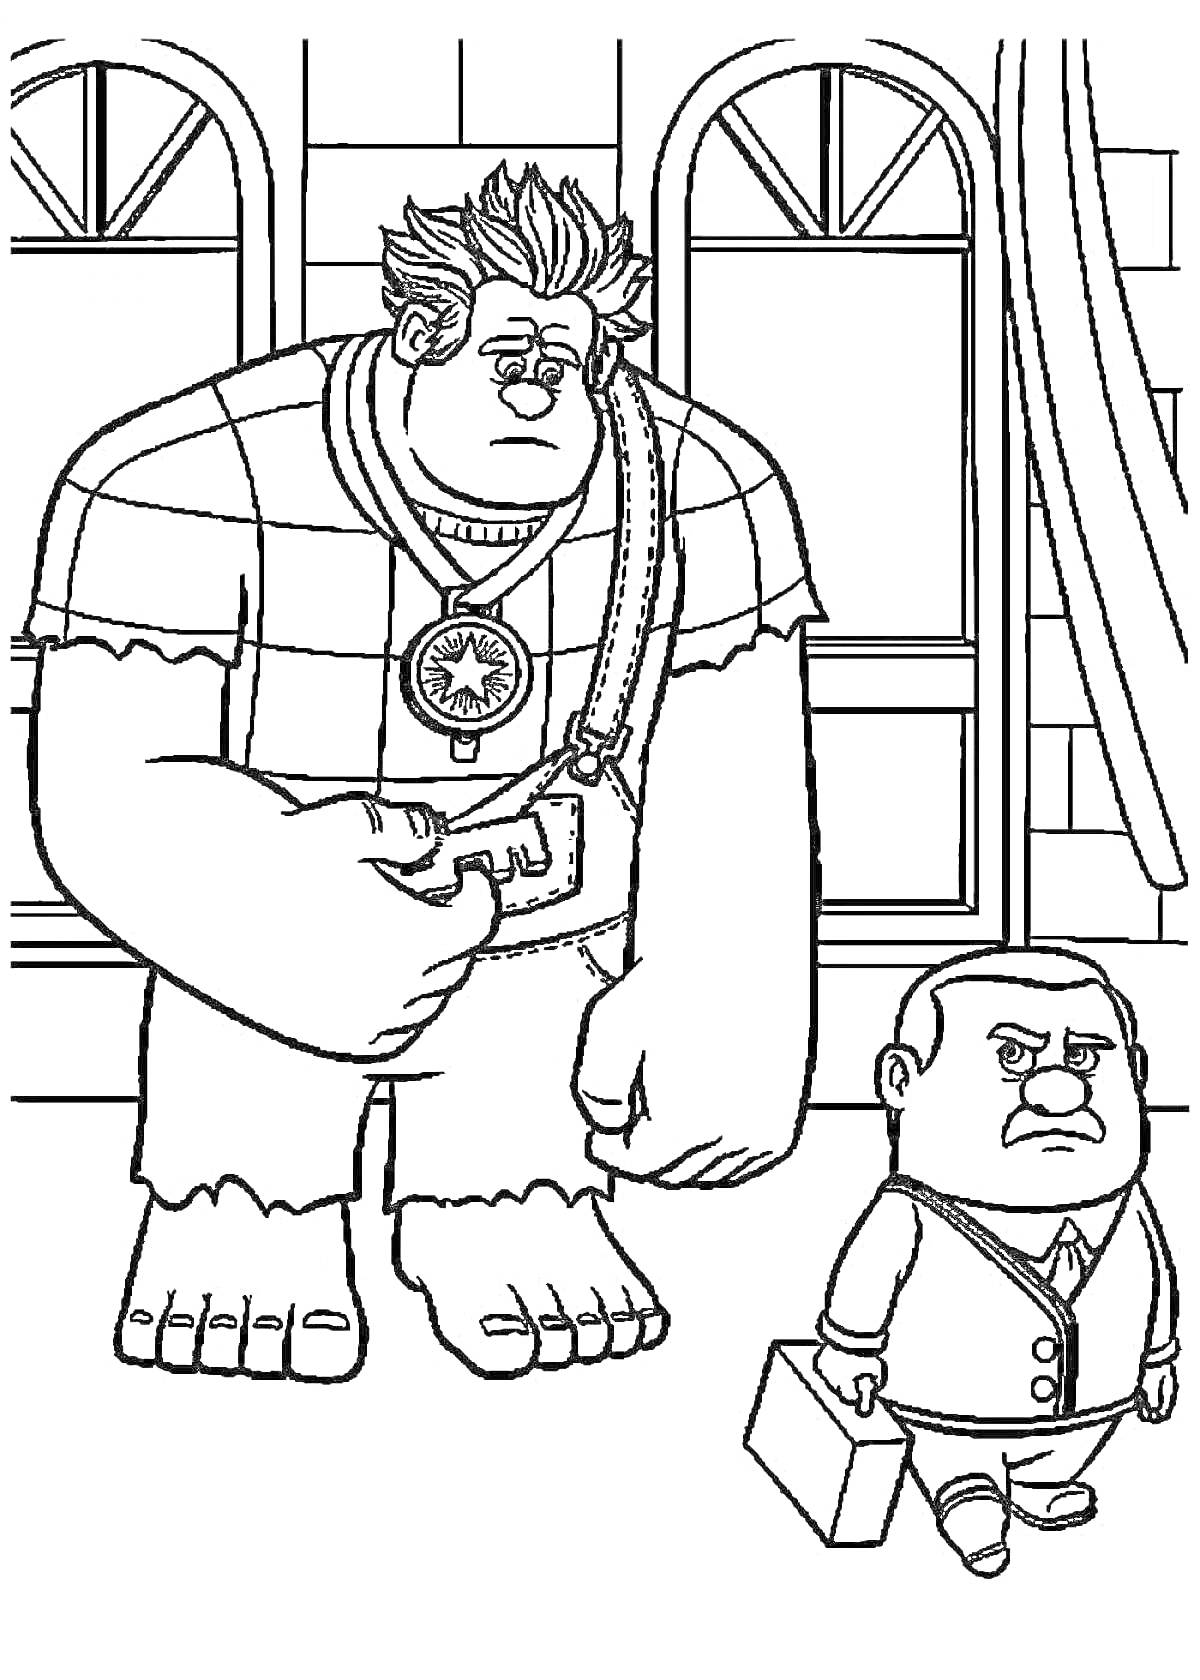 Раскраска Большой человек с медальоном и маленький человек с чемоданом на фоне дома с двумя высокими окнами